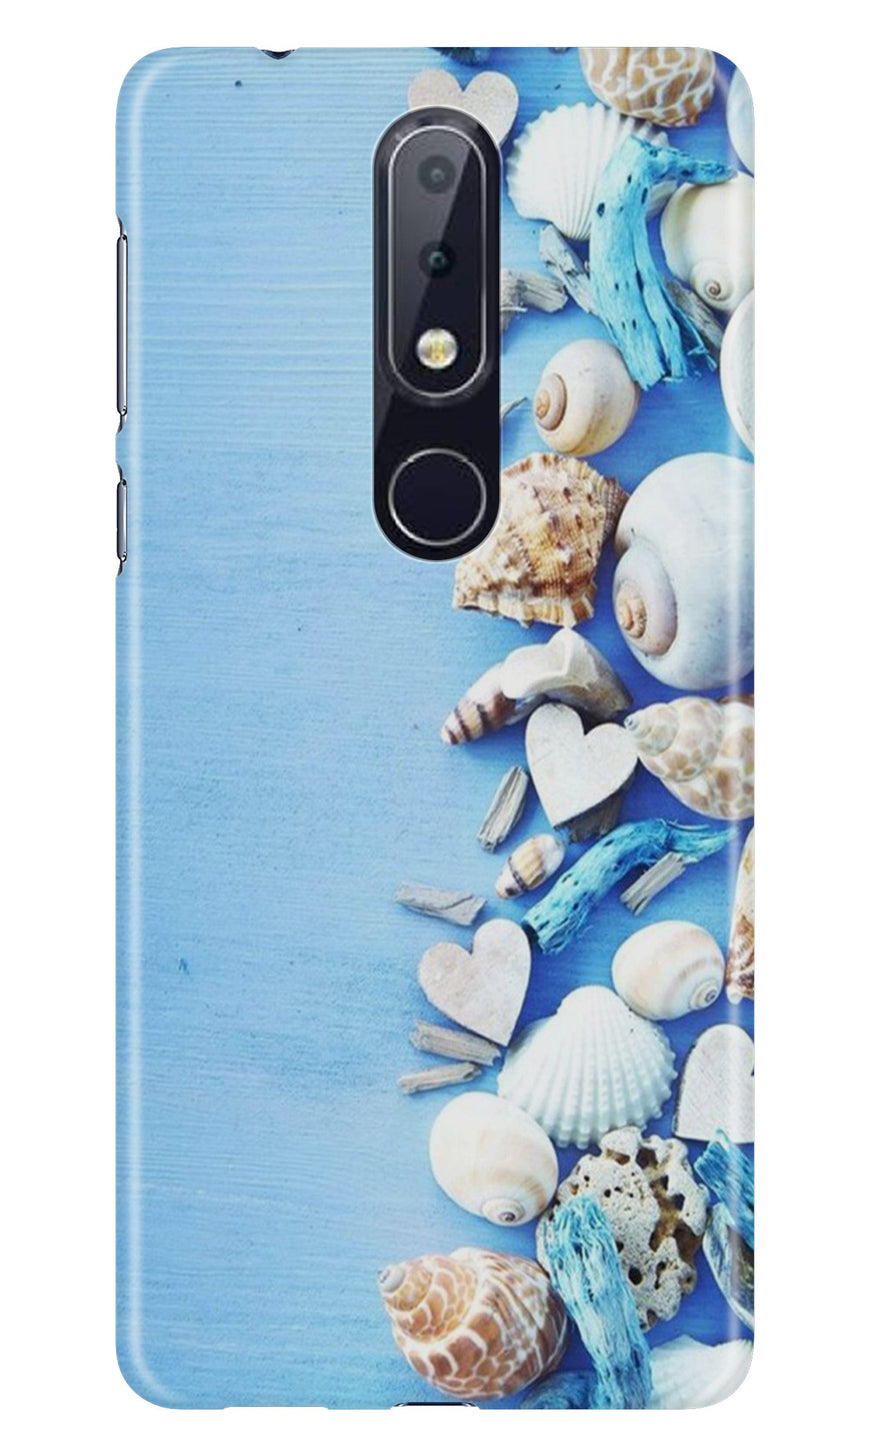 Sea Shells2 Case for Nokia 6.1 Plus